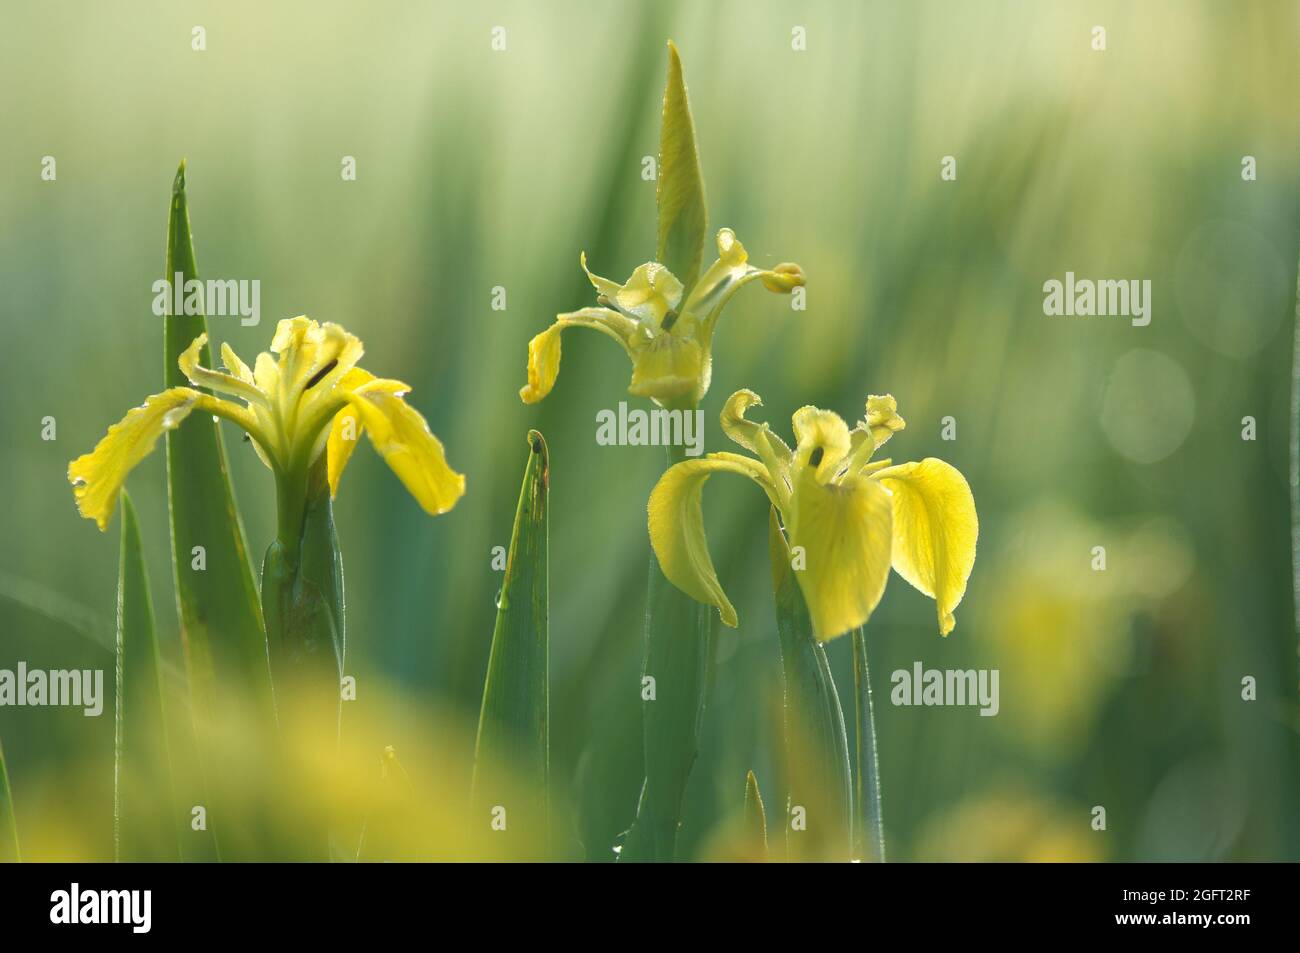 Three yellow flowering irises Stock Photo